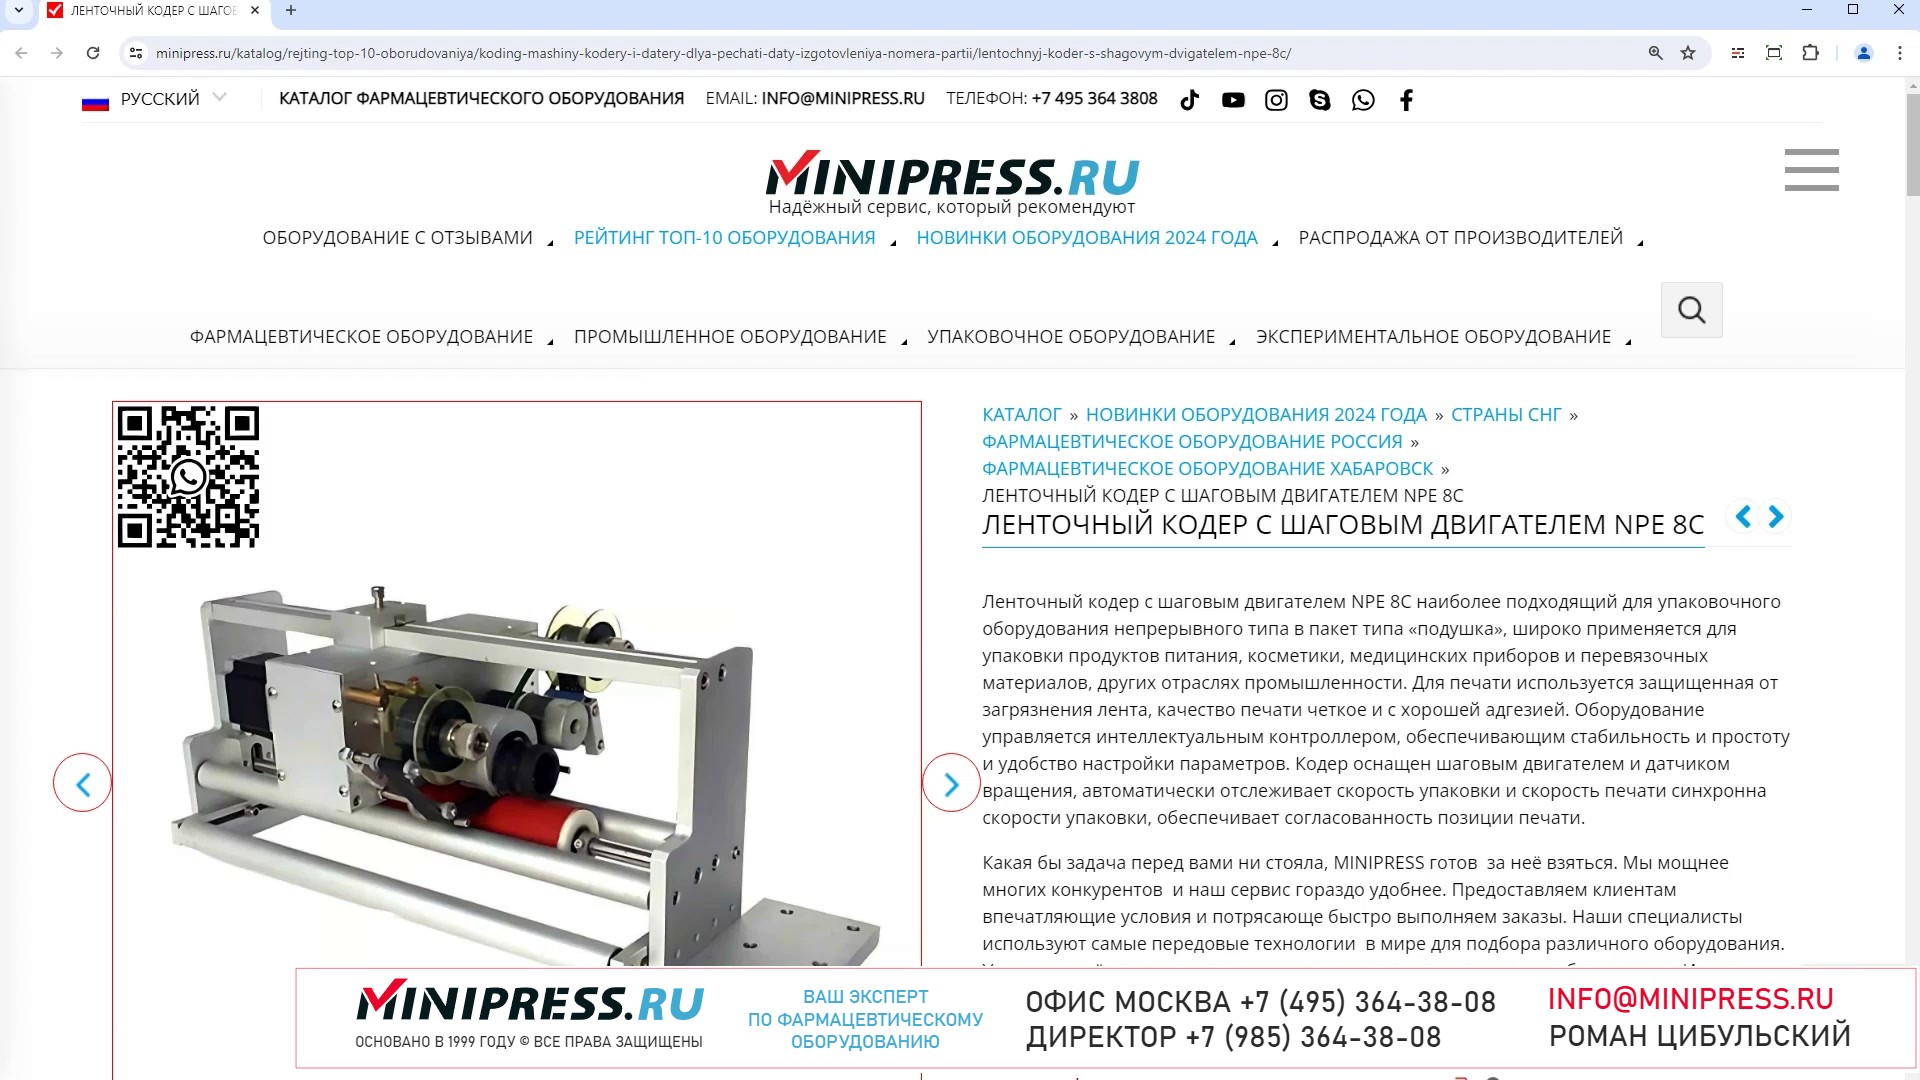 Minipress.ru Ленточный кодер с шаговым двигателем NPE 8C